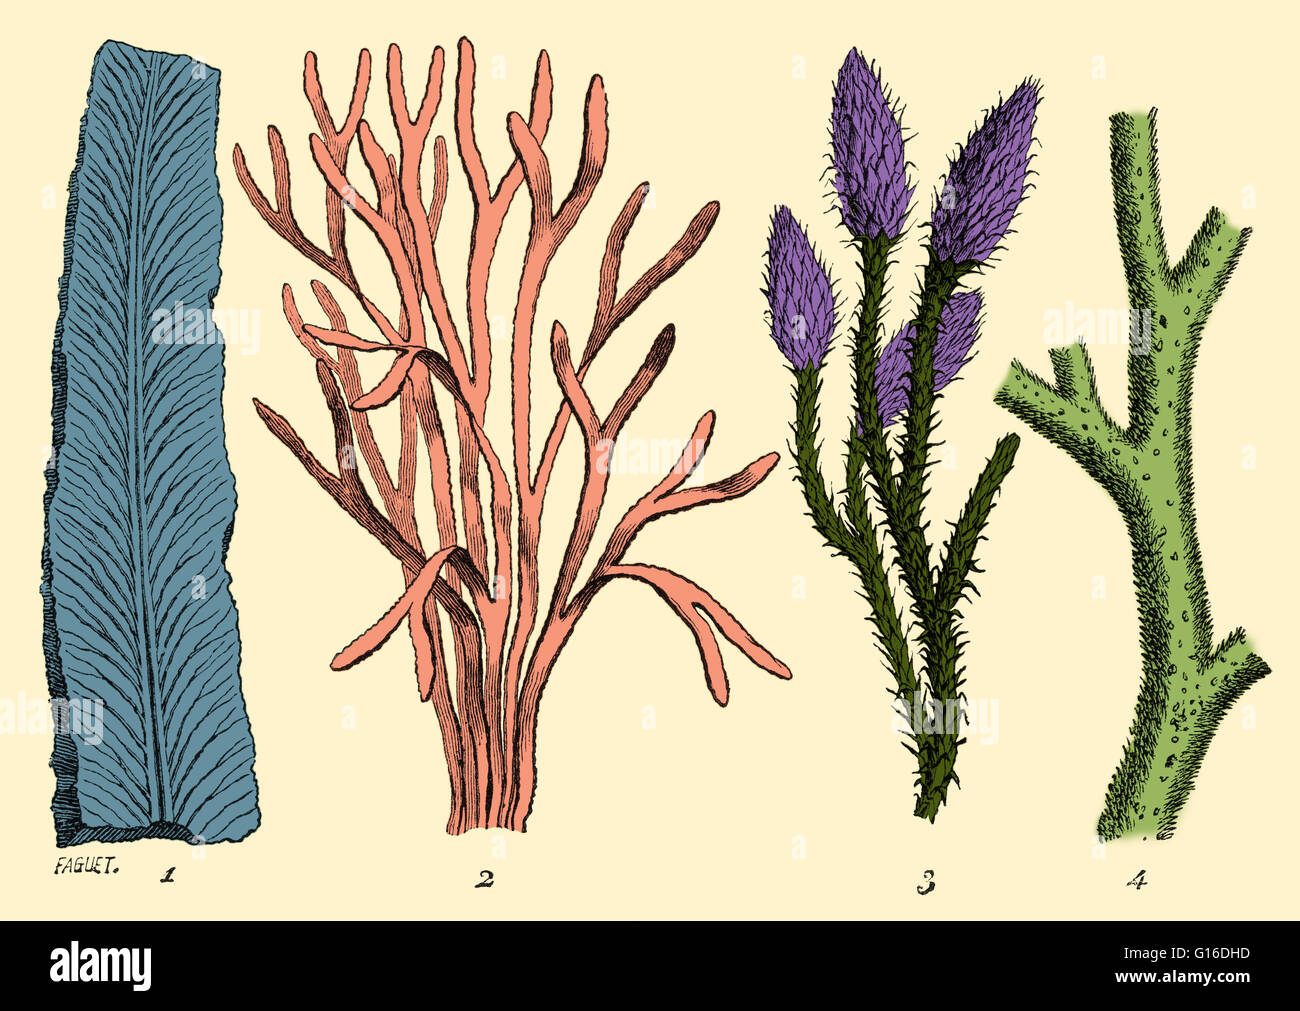 Algen und Moos-wie Pflanzen waren die häufigsten Flora während der Silurian Periode vor 400 Millionen Jahren. Illustration von Louis Figuiers die Welt vor der Sintflut, 1867 amerikanische Ausgabe. Dieses Bild wurde Farbe verbessert. Stockfoto